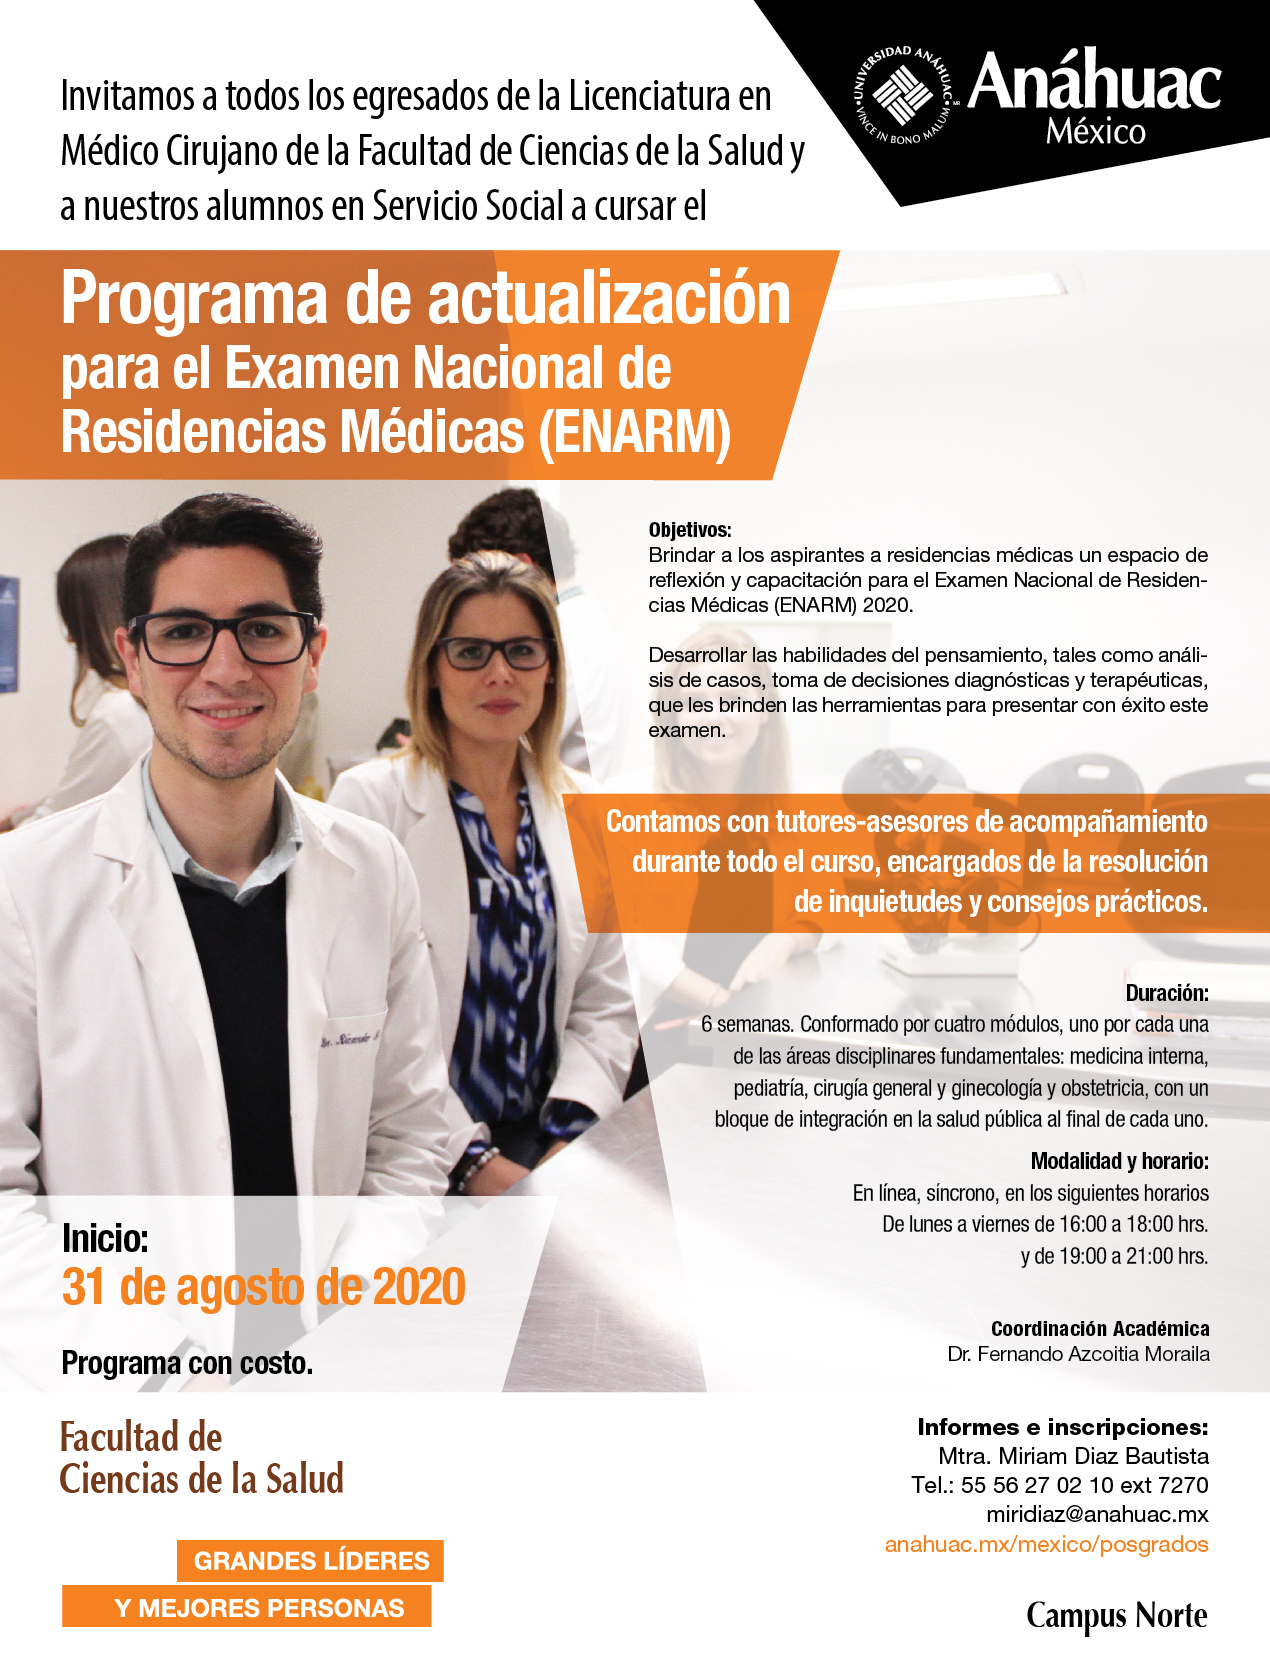 Programa de Actualización para Examen Nacional de Residencias Médicas 